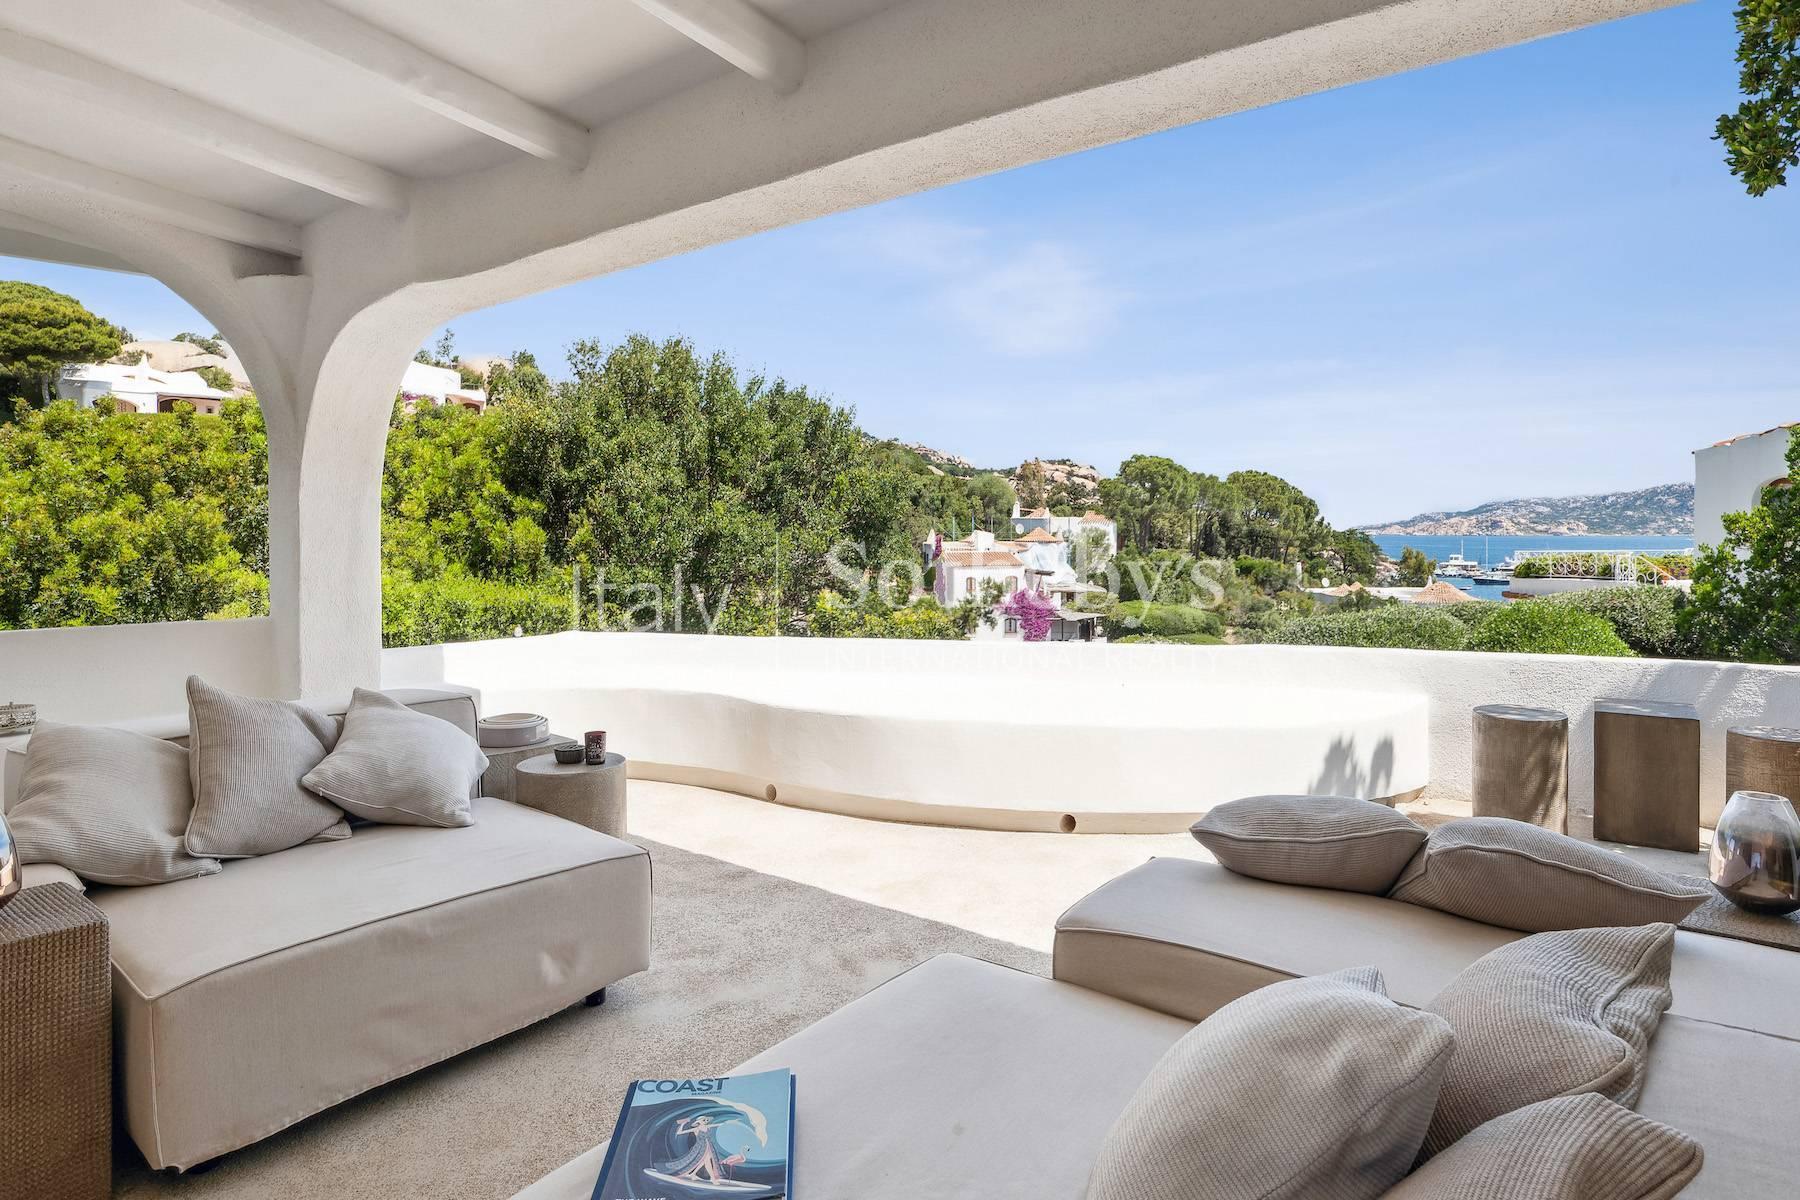 Amazing villa by the sea at Punta Sardegna - 4